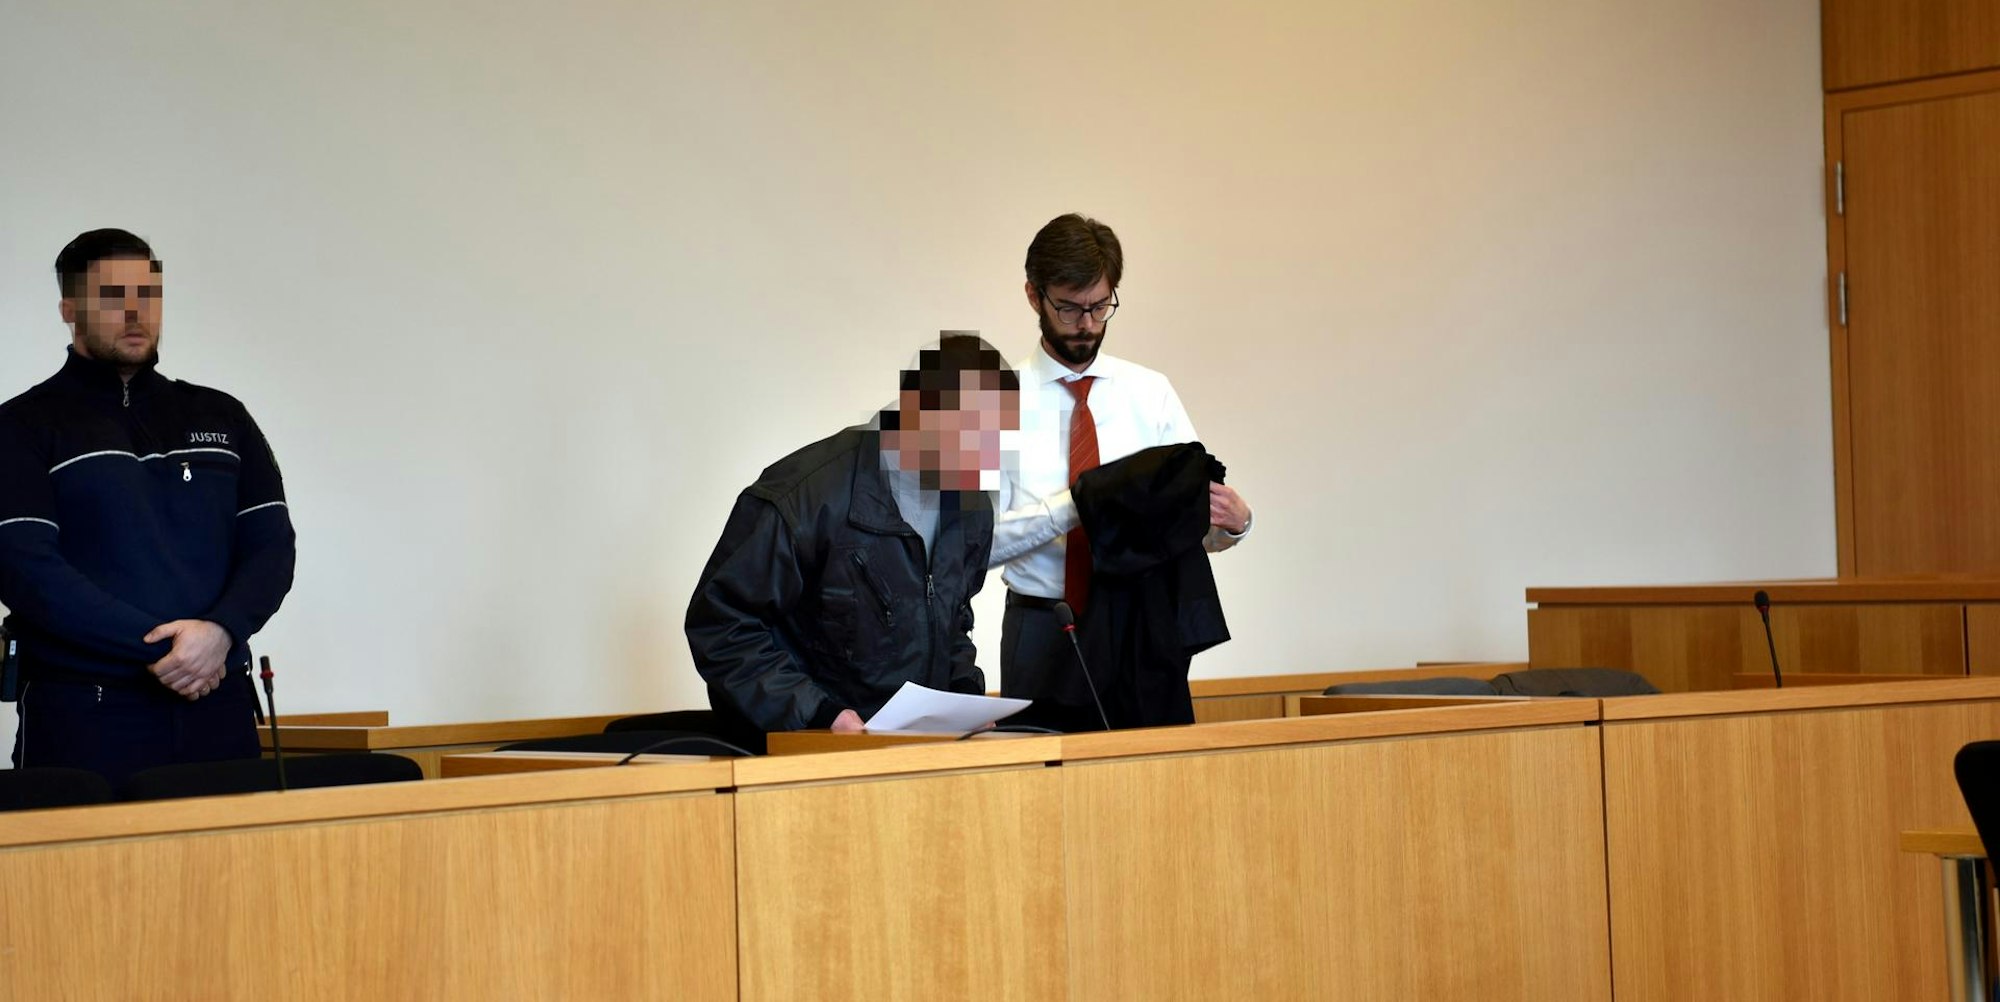 Der 28-jährige Beschuldigte (Mitte) aus dem Kaller Gemeindegebiet soll seine Großmutter getötet haben. Am Montag begann in Aachen das Gerichtsverfahren.